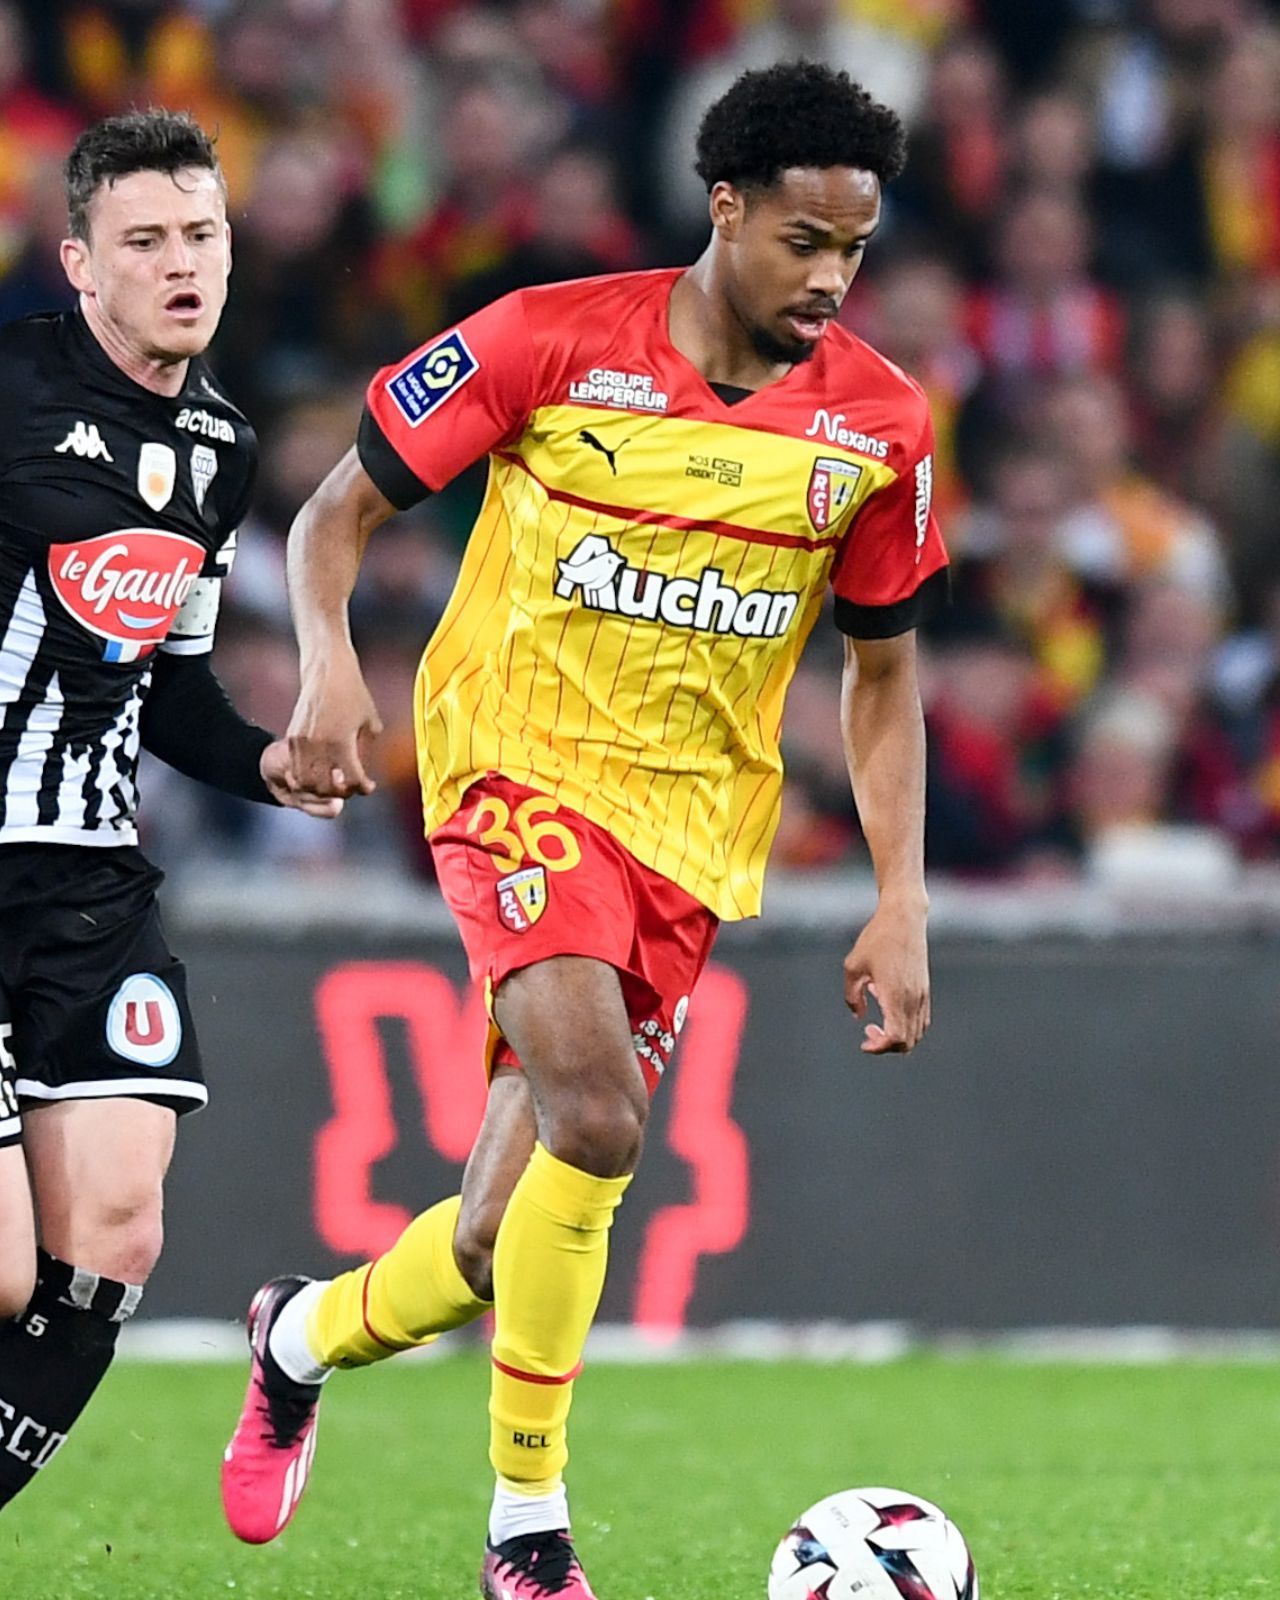 L'attaquant Rémy Labeau-Lascary est prêté au Stade Lavallois par le RC Lens.